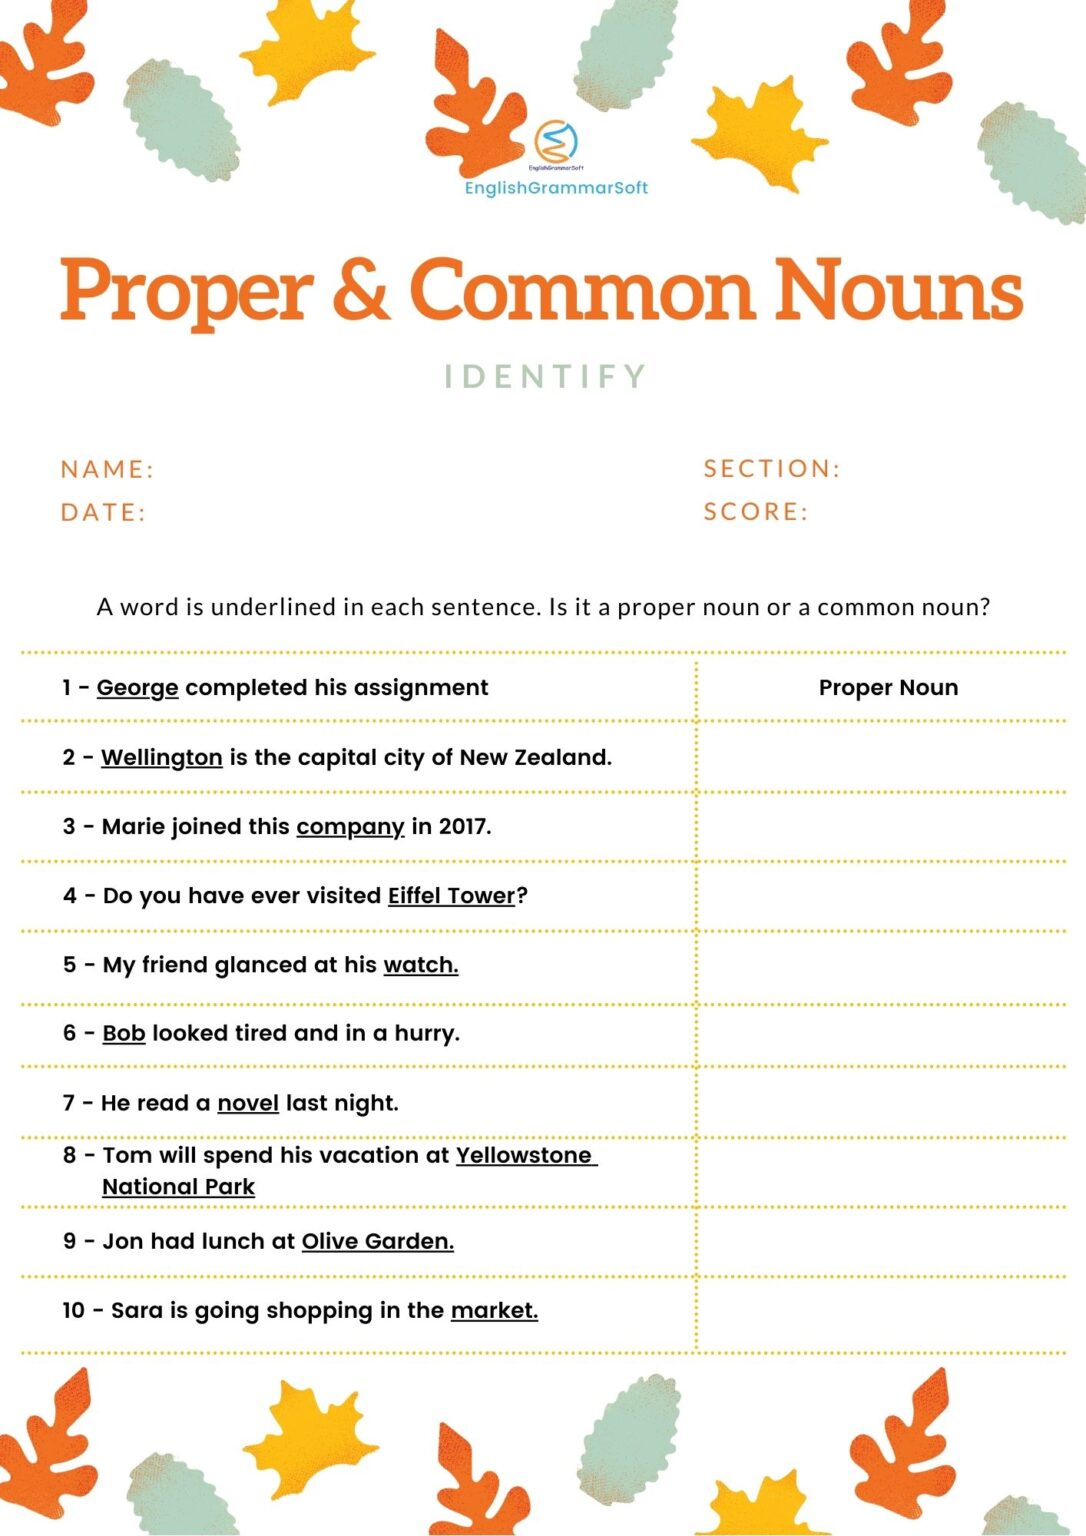 proper-nouns-and-common-nouns-detailed-lesson-plan-proper-nouns-vrogue